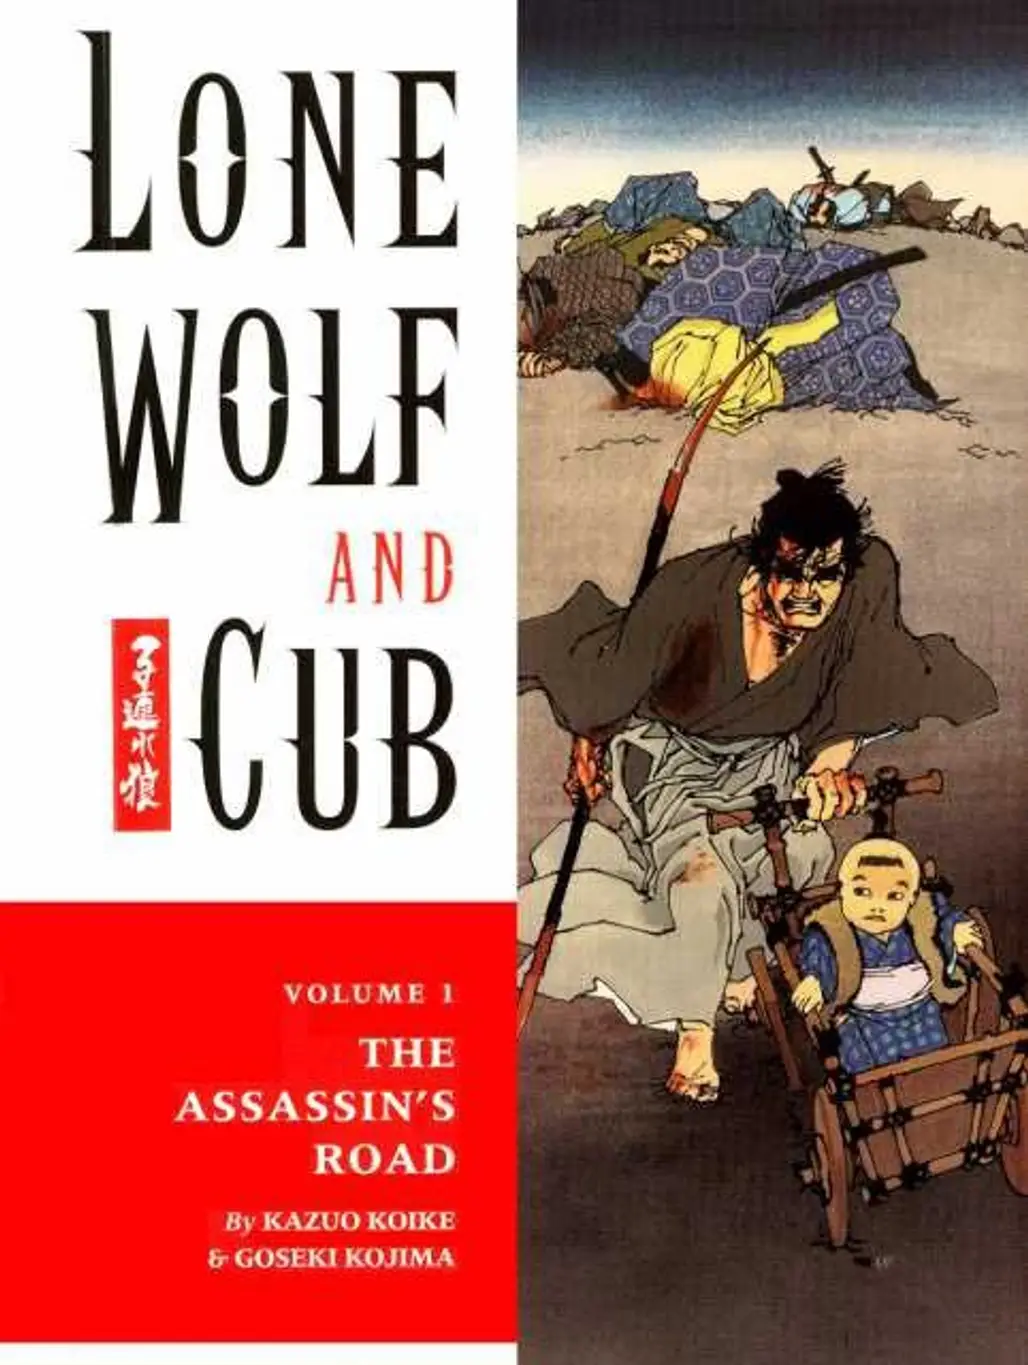 Lone Wolf and Cub by Kazuo Koike and Goseki Kojima